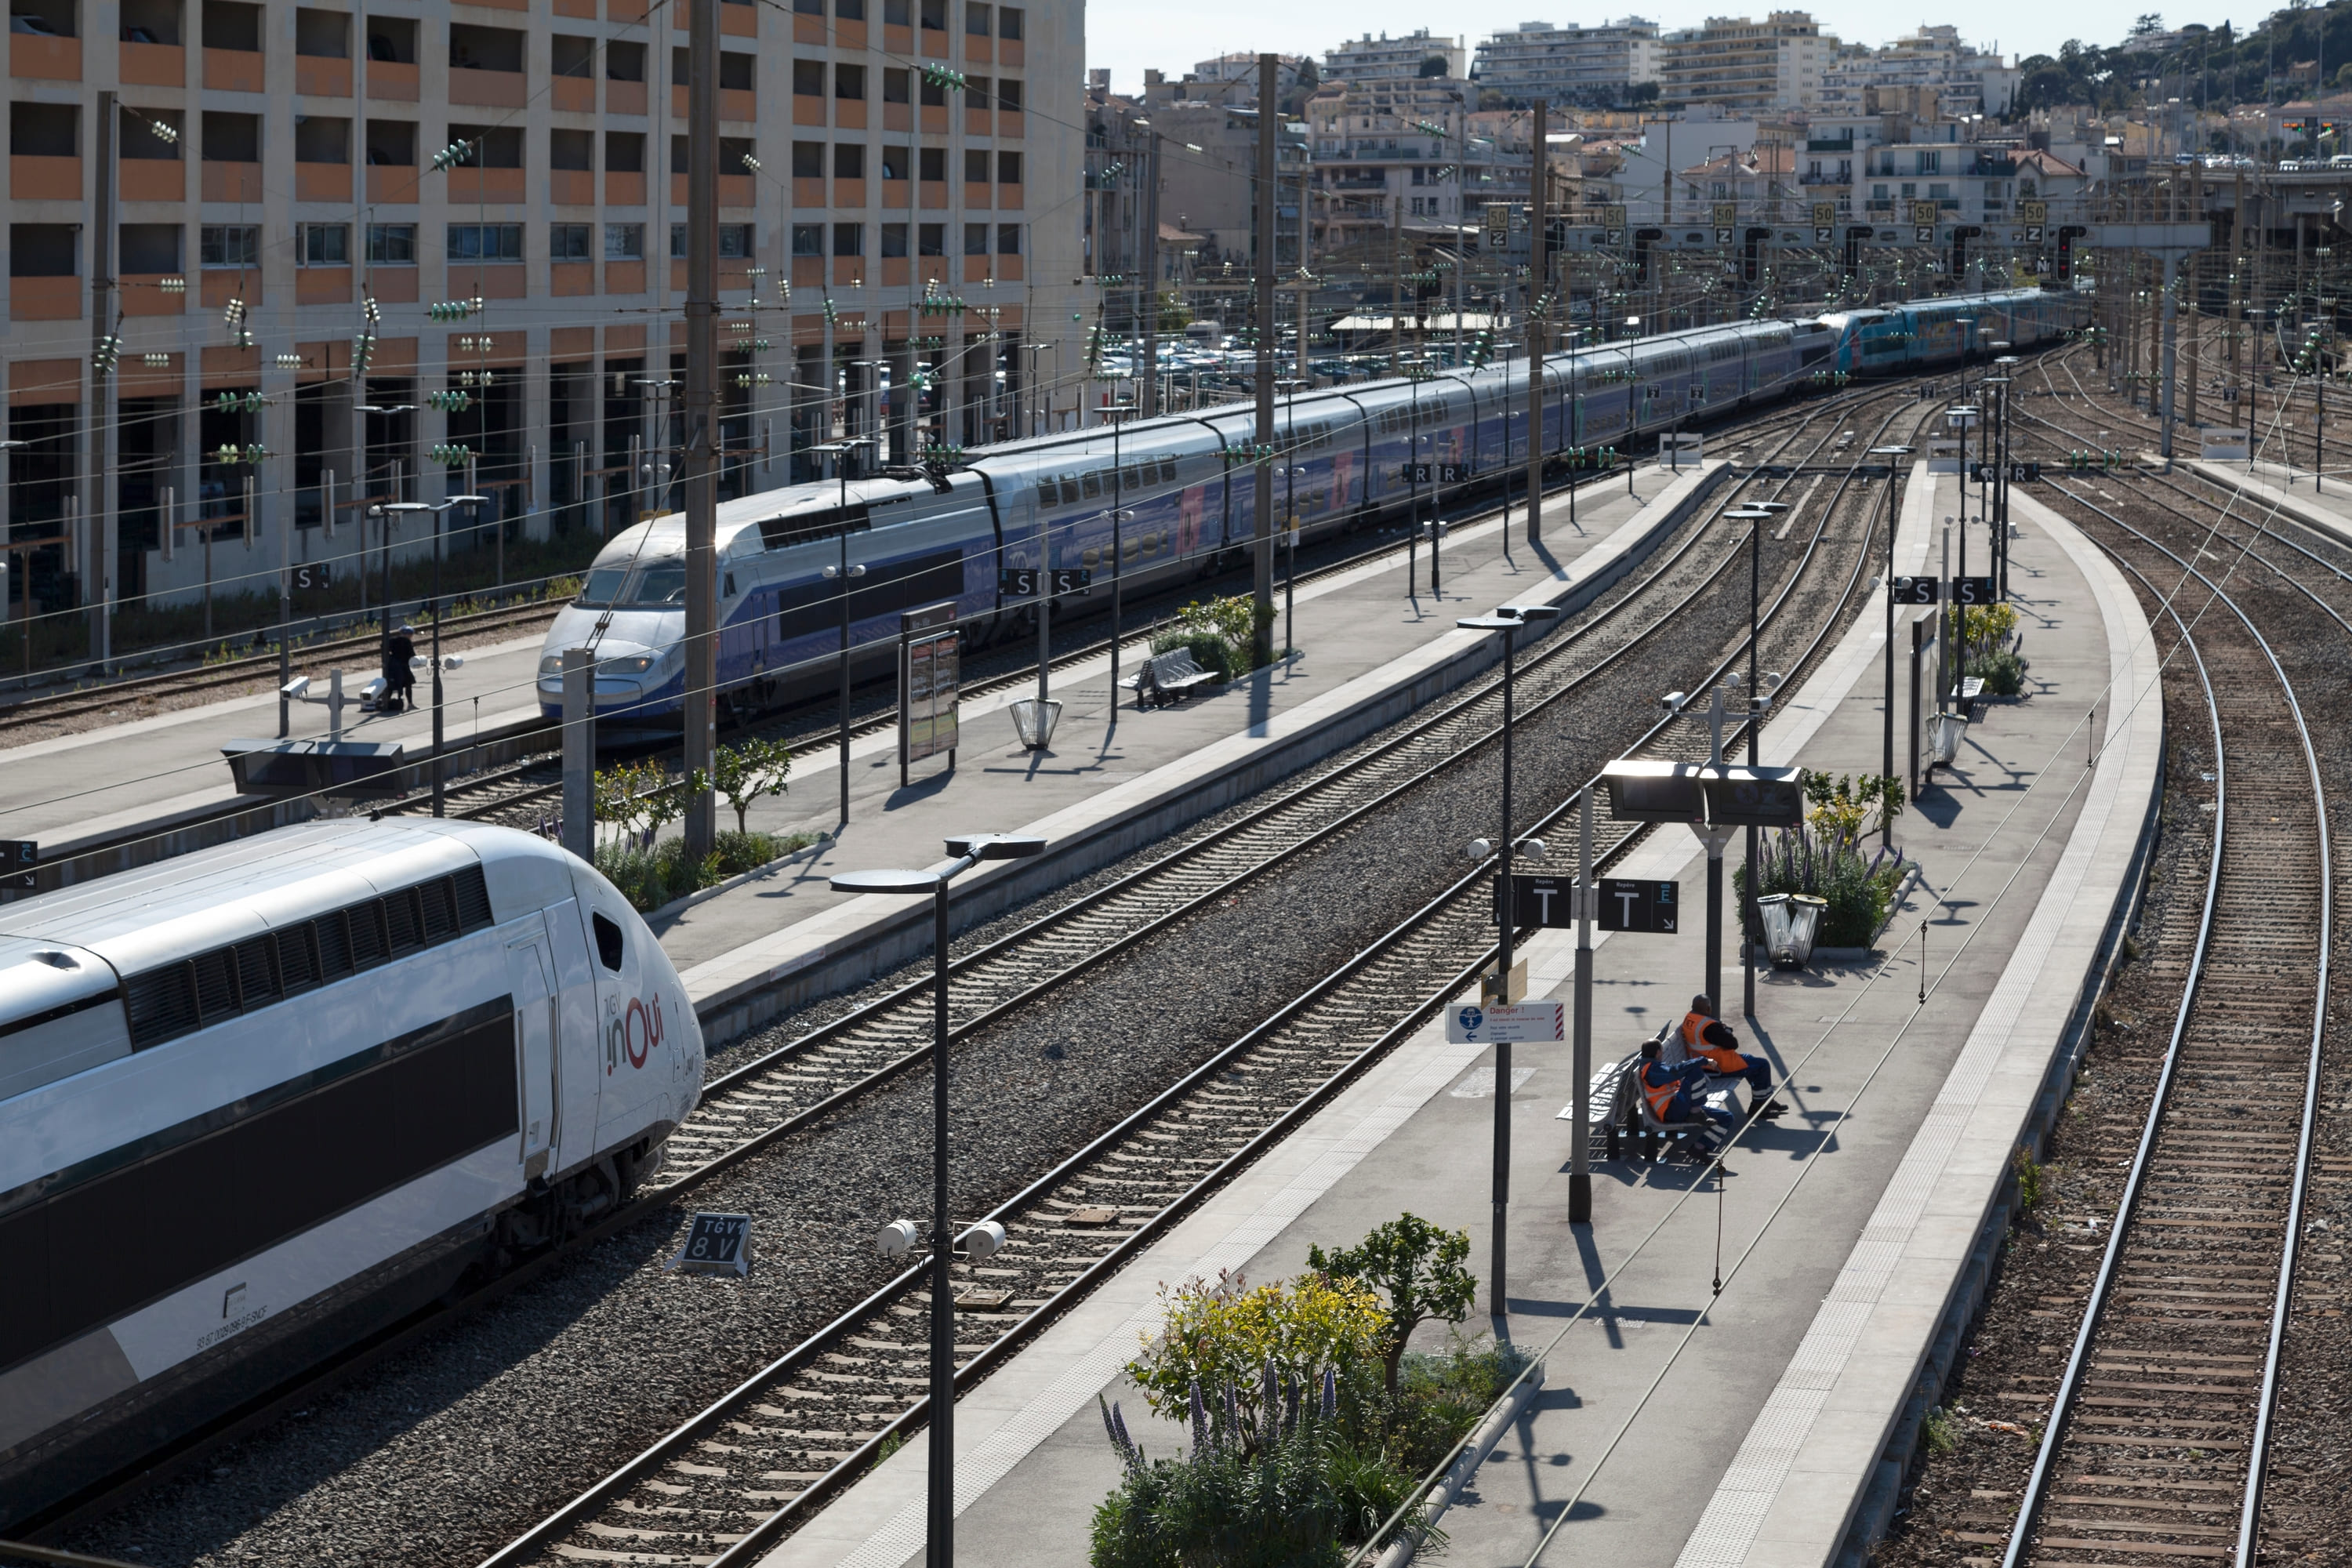 SNCF : les nombreux retards de trains dus à des problèmes d'aiguillage appartiendront bientôt au passé, grâce à une nouvelle technologie